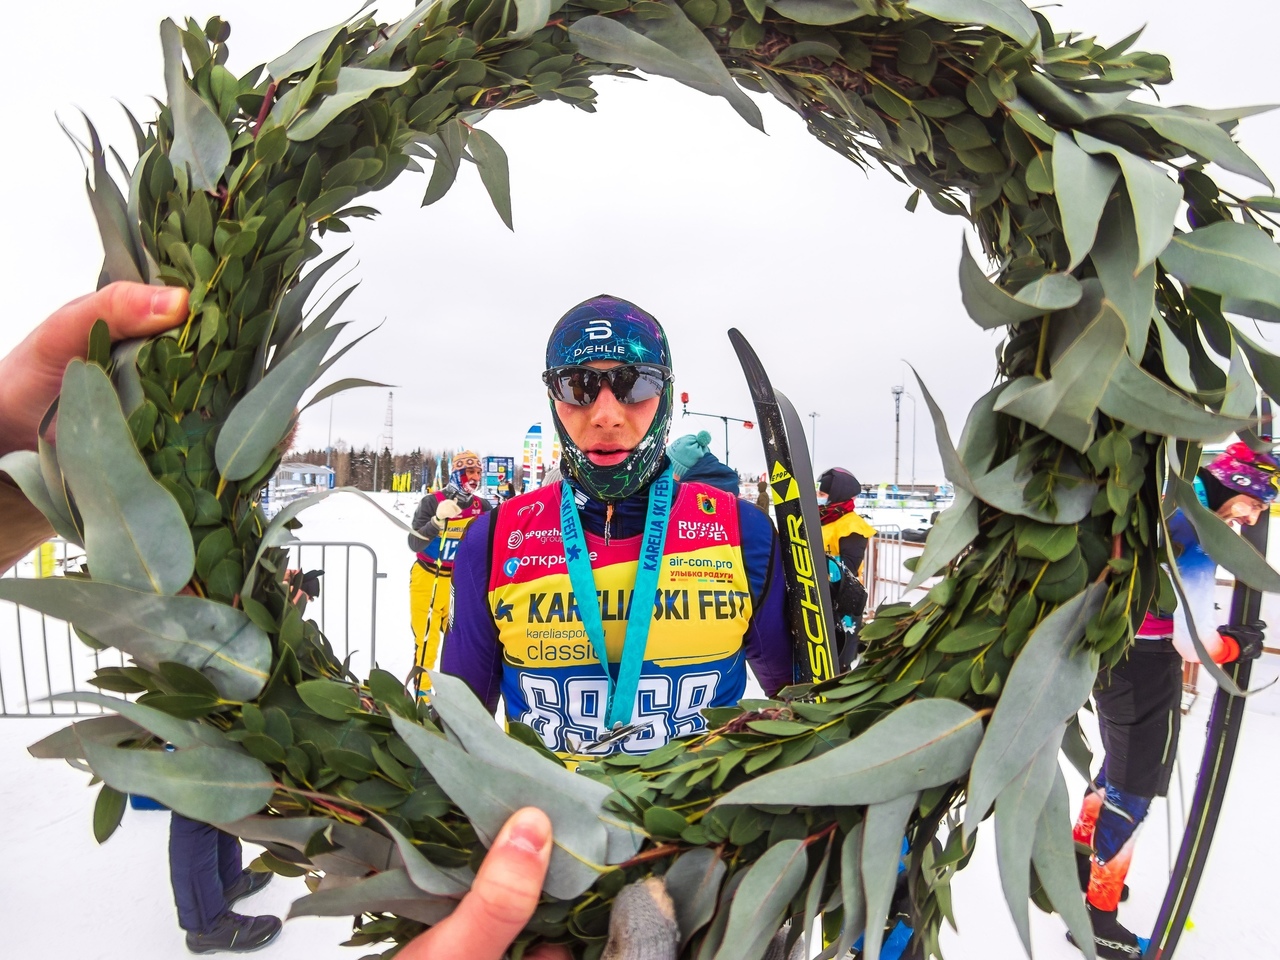 Лыжный фестиваль из Карелии признан лучшим событийным мероприятием в области спорта в России